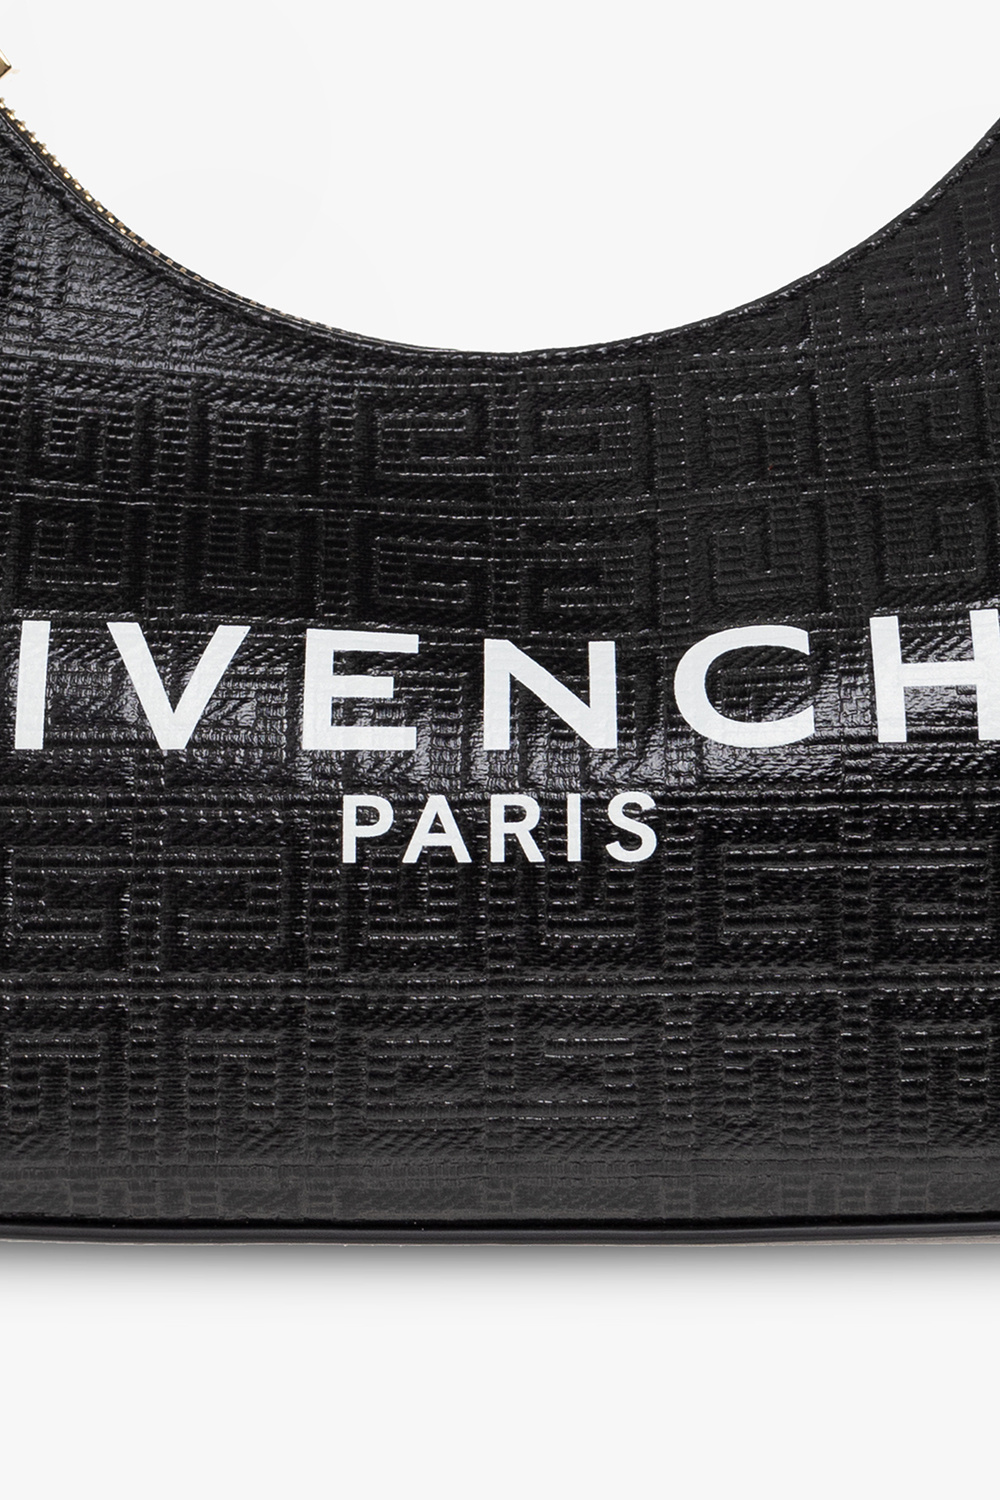 Givenchy ‘Moon Cut Out Small’ handbag